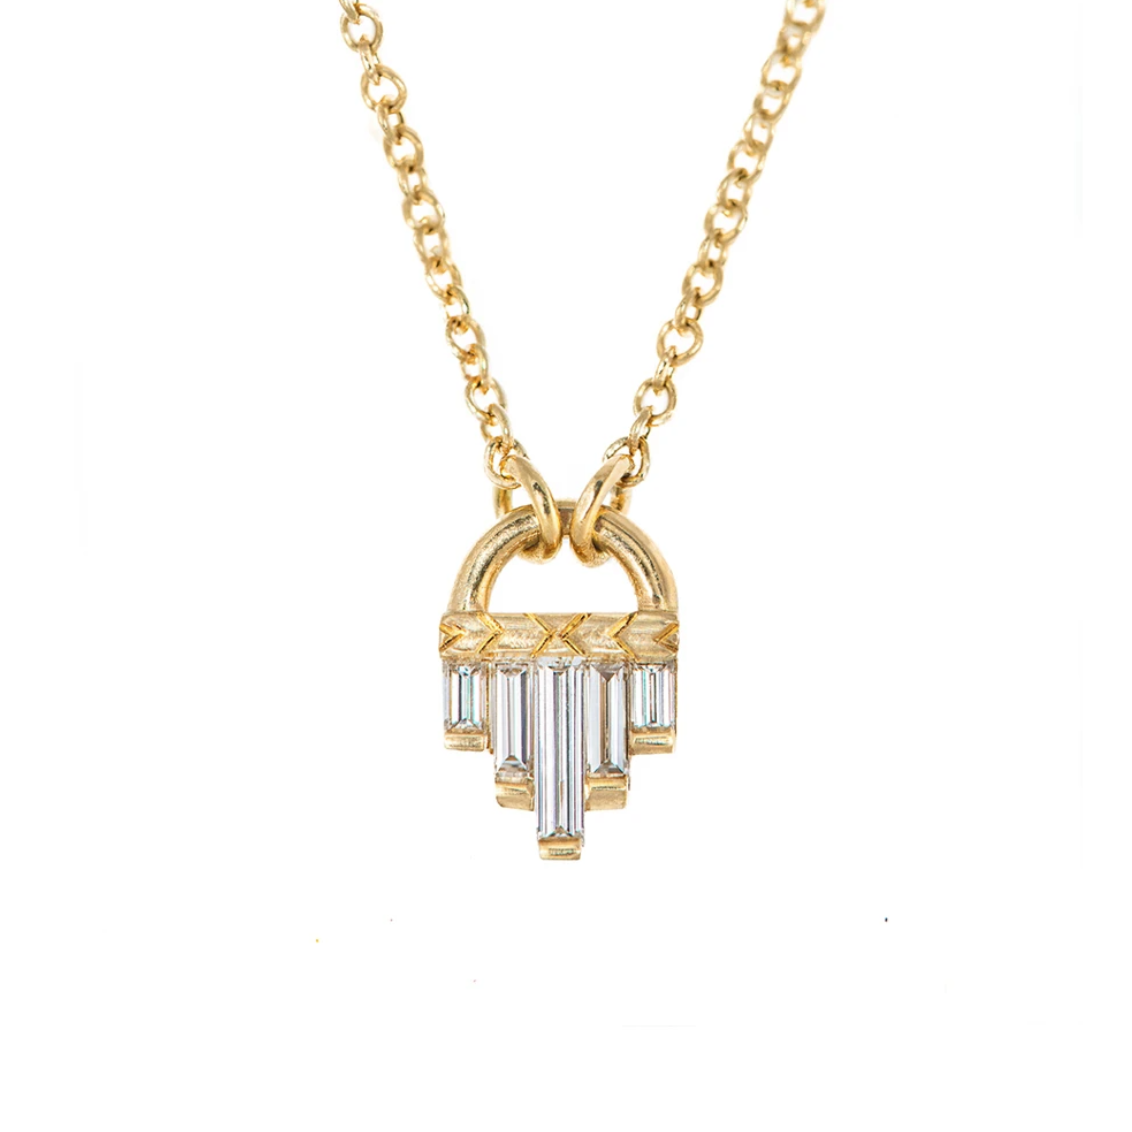 Graduated Baguette Diamond Pendant Necklace